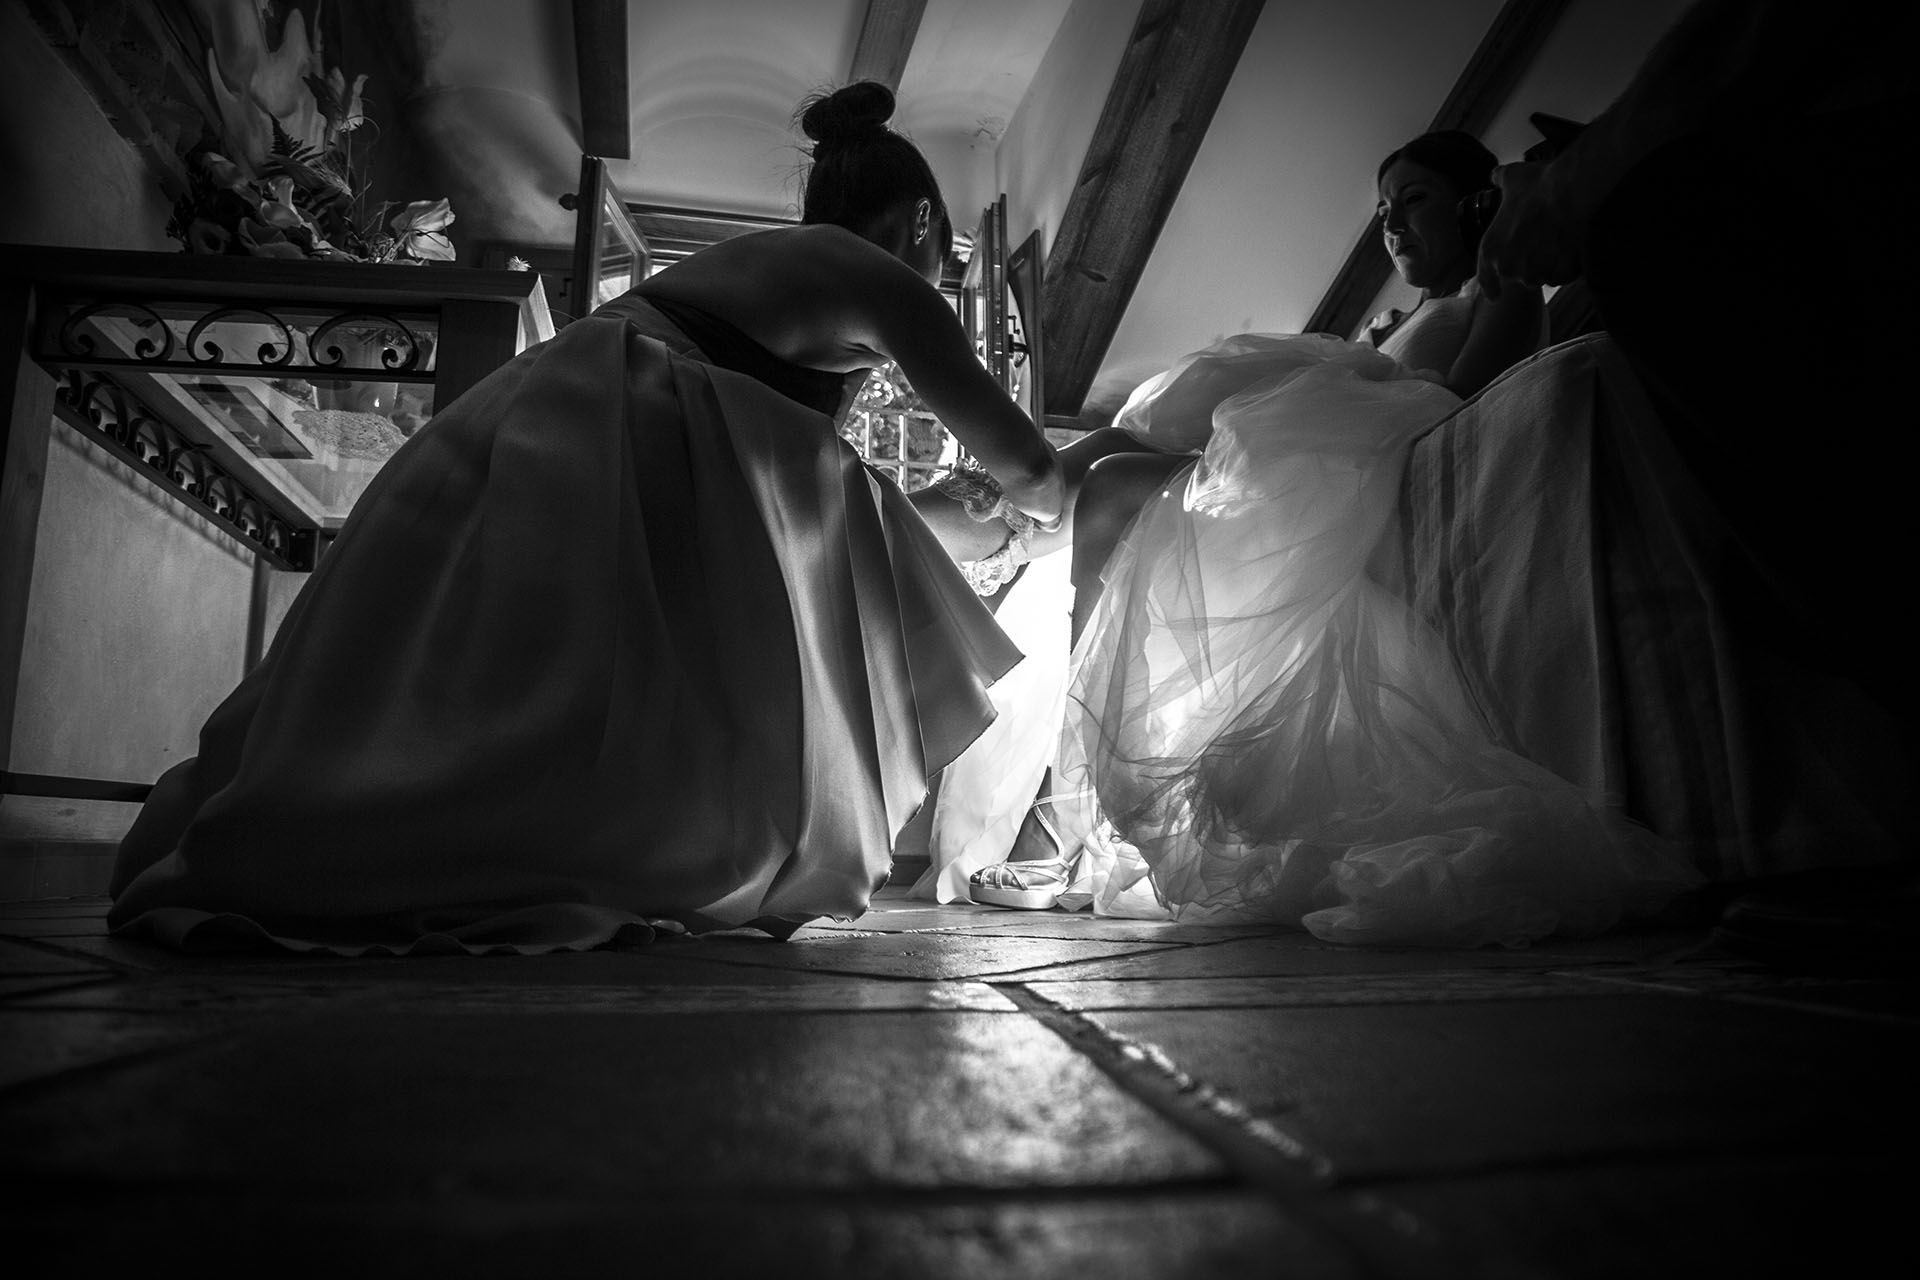 Fotos de boda originales-angela coronel-molina de aragon-eduard y laura